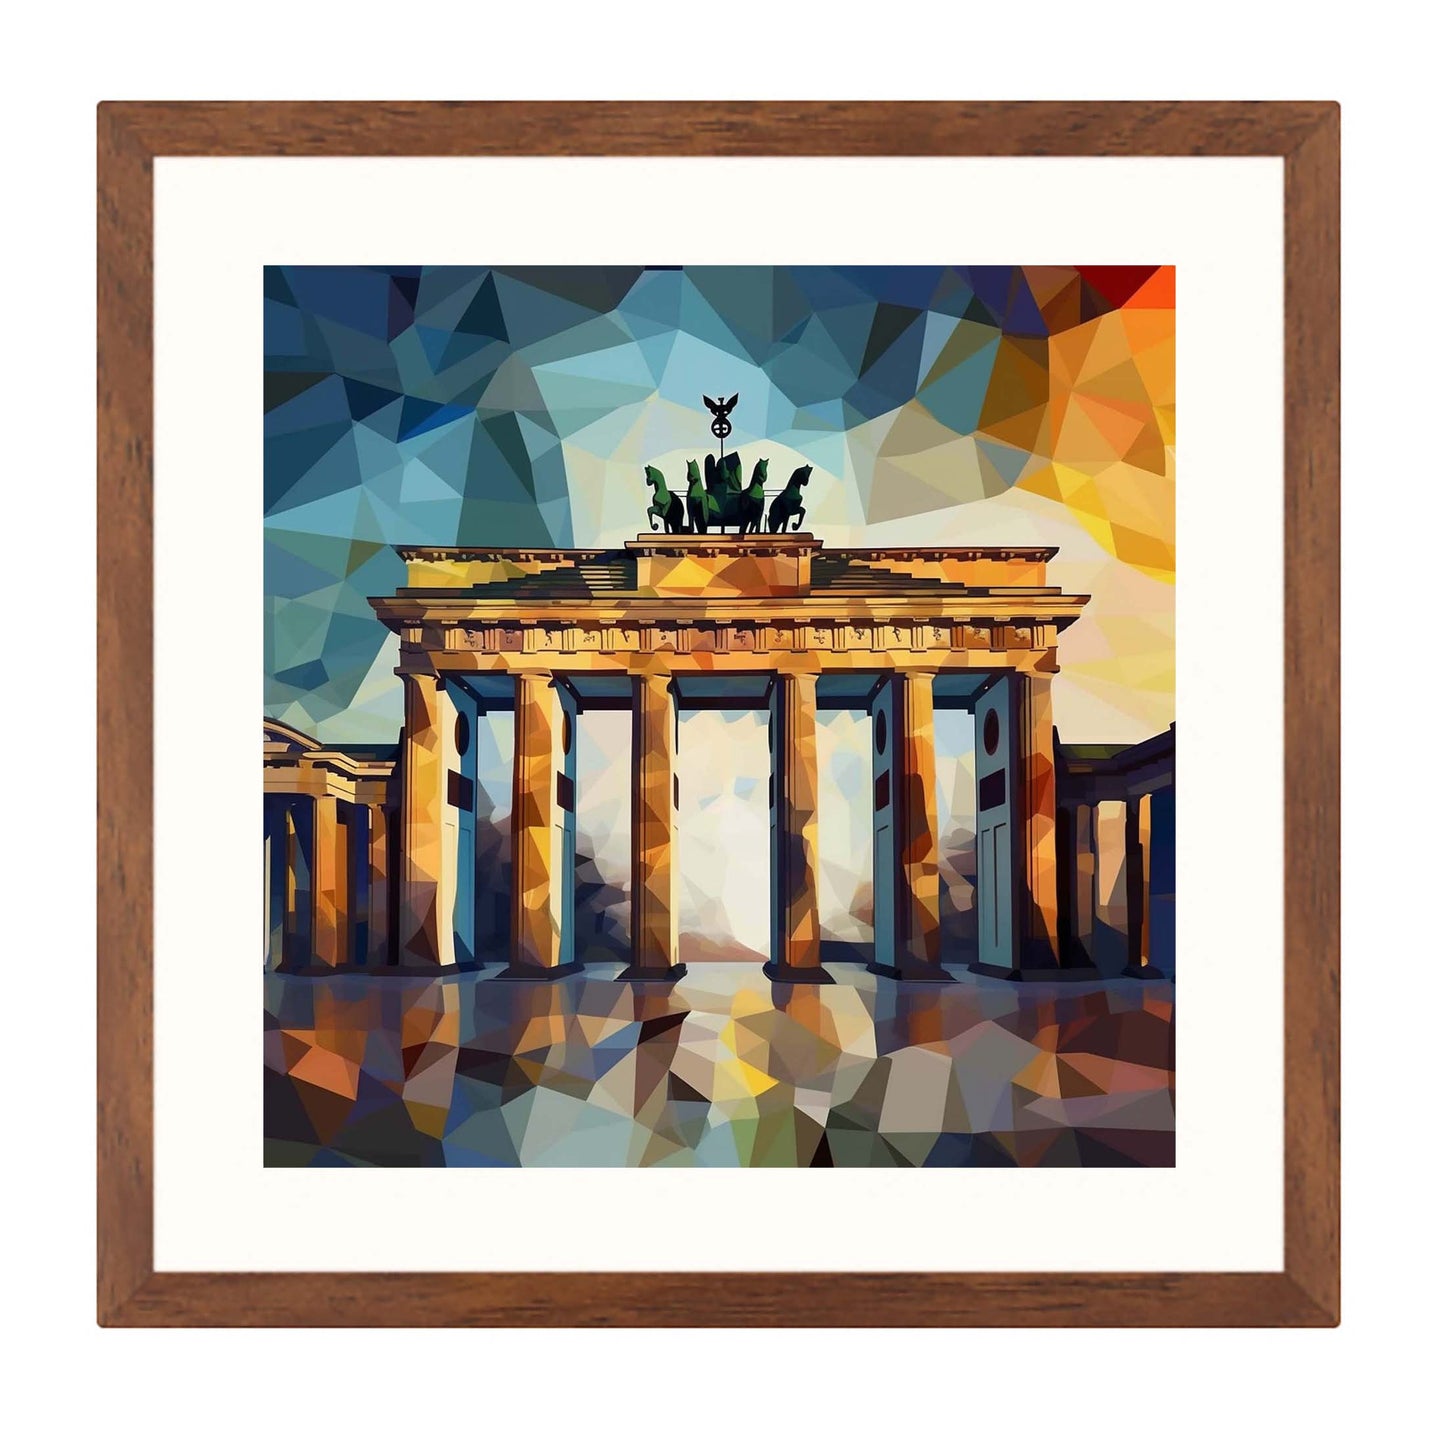 Berlin Brandenburger Tor - Wandbild in der Stilrichtung des Expressionismus